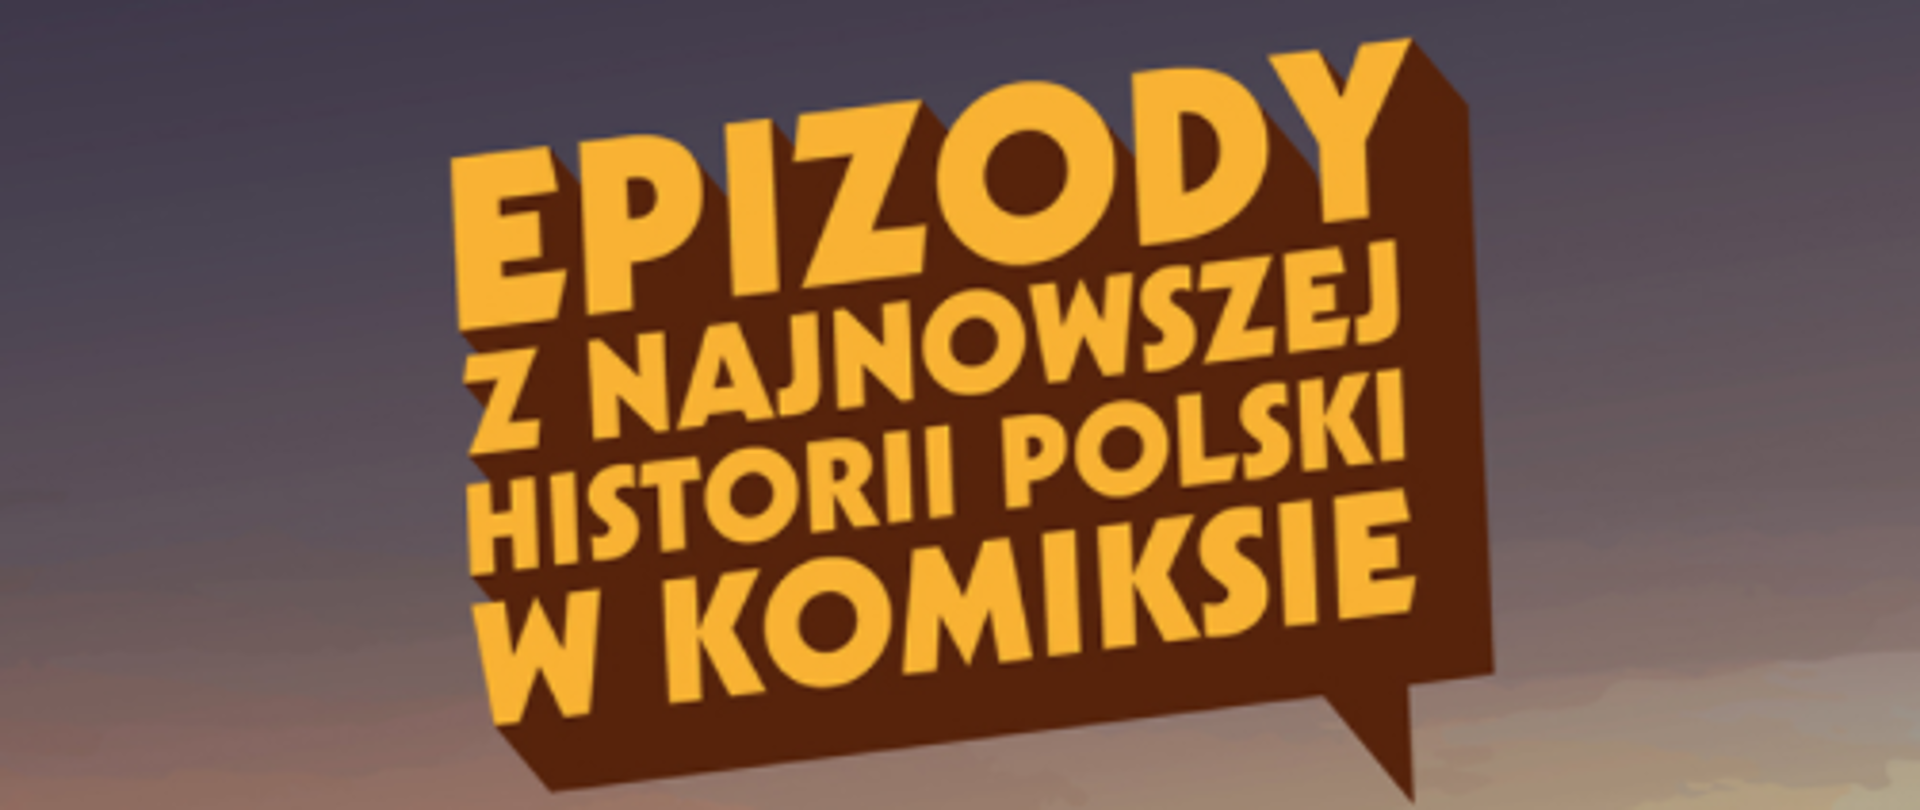 Instytut Pamięci Narodowej - konkurs "Epizody z najnowszej historii Polski w komiksie"